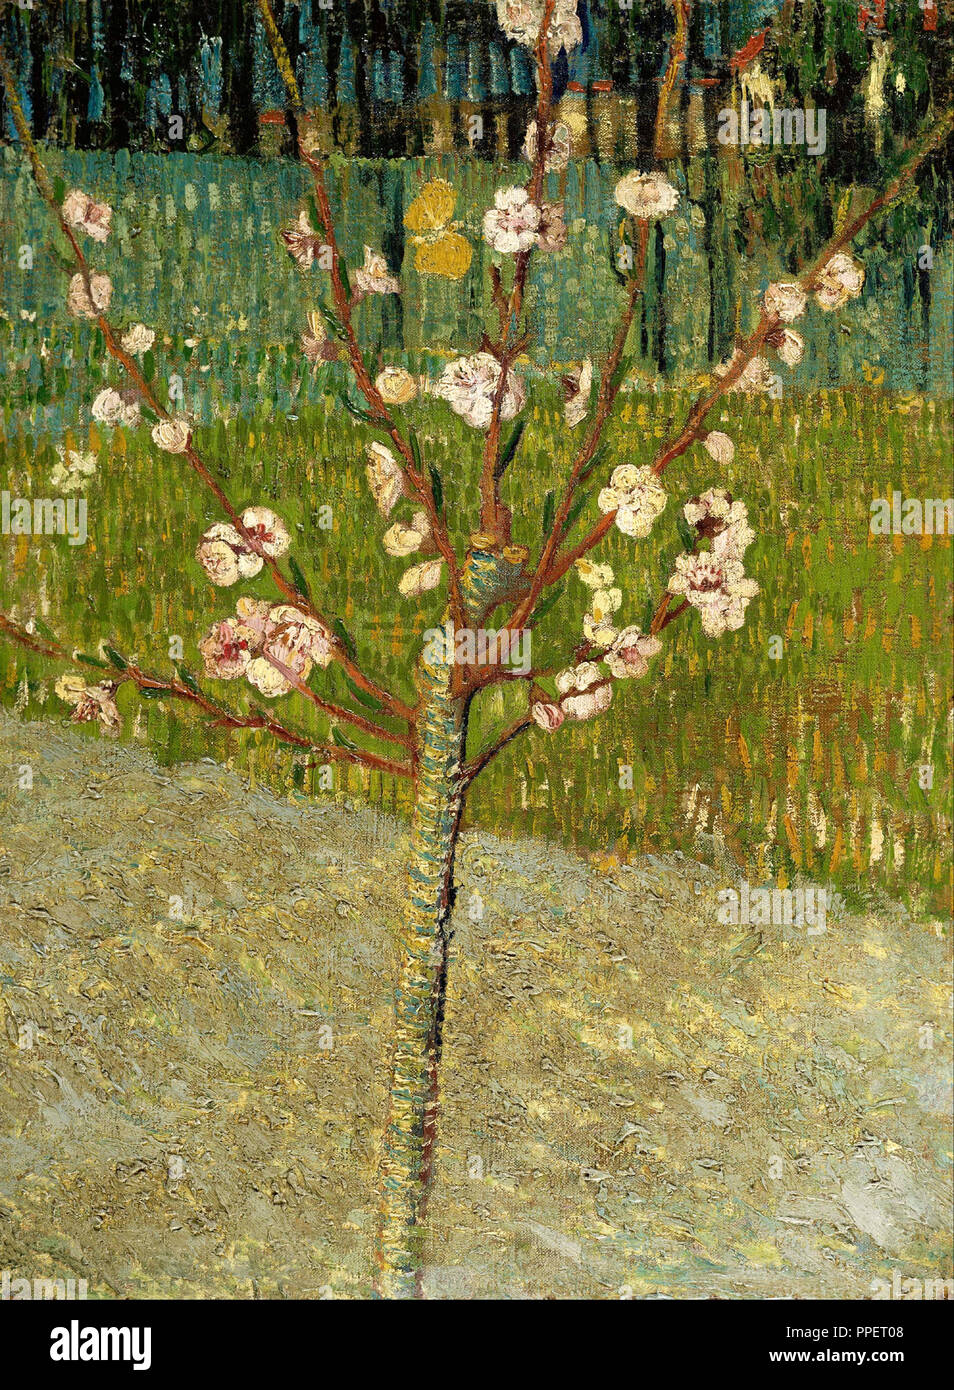 Amandier en fleurs. Date/Période : Avril 1888 - 1888. La peinture. Huile sur toile. Auteur : Vincent VAN GOGH. Banque D'Images